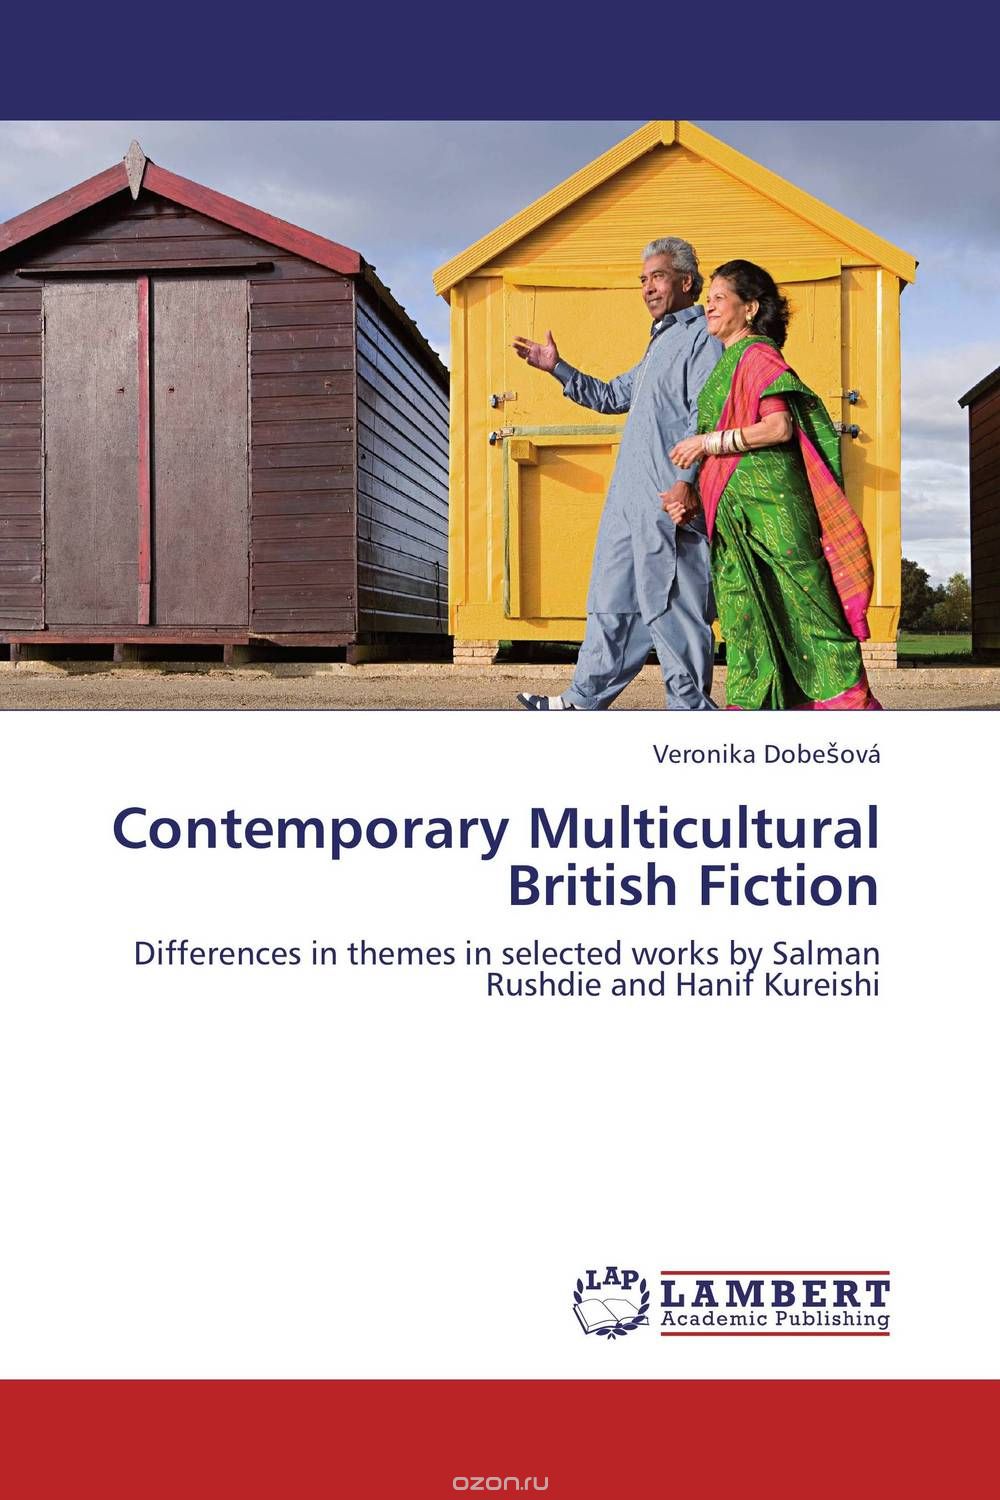 Скачать книгу "Contemporary Multicultural British Fiction"